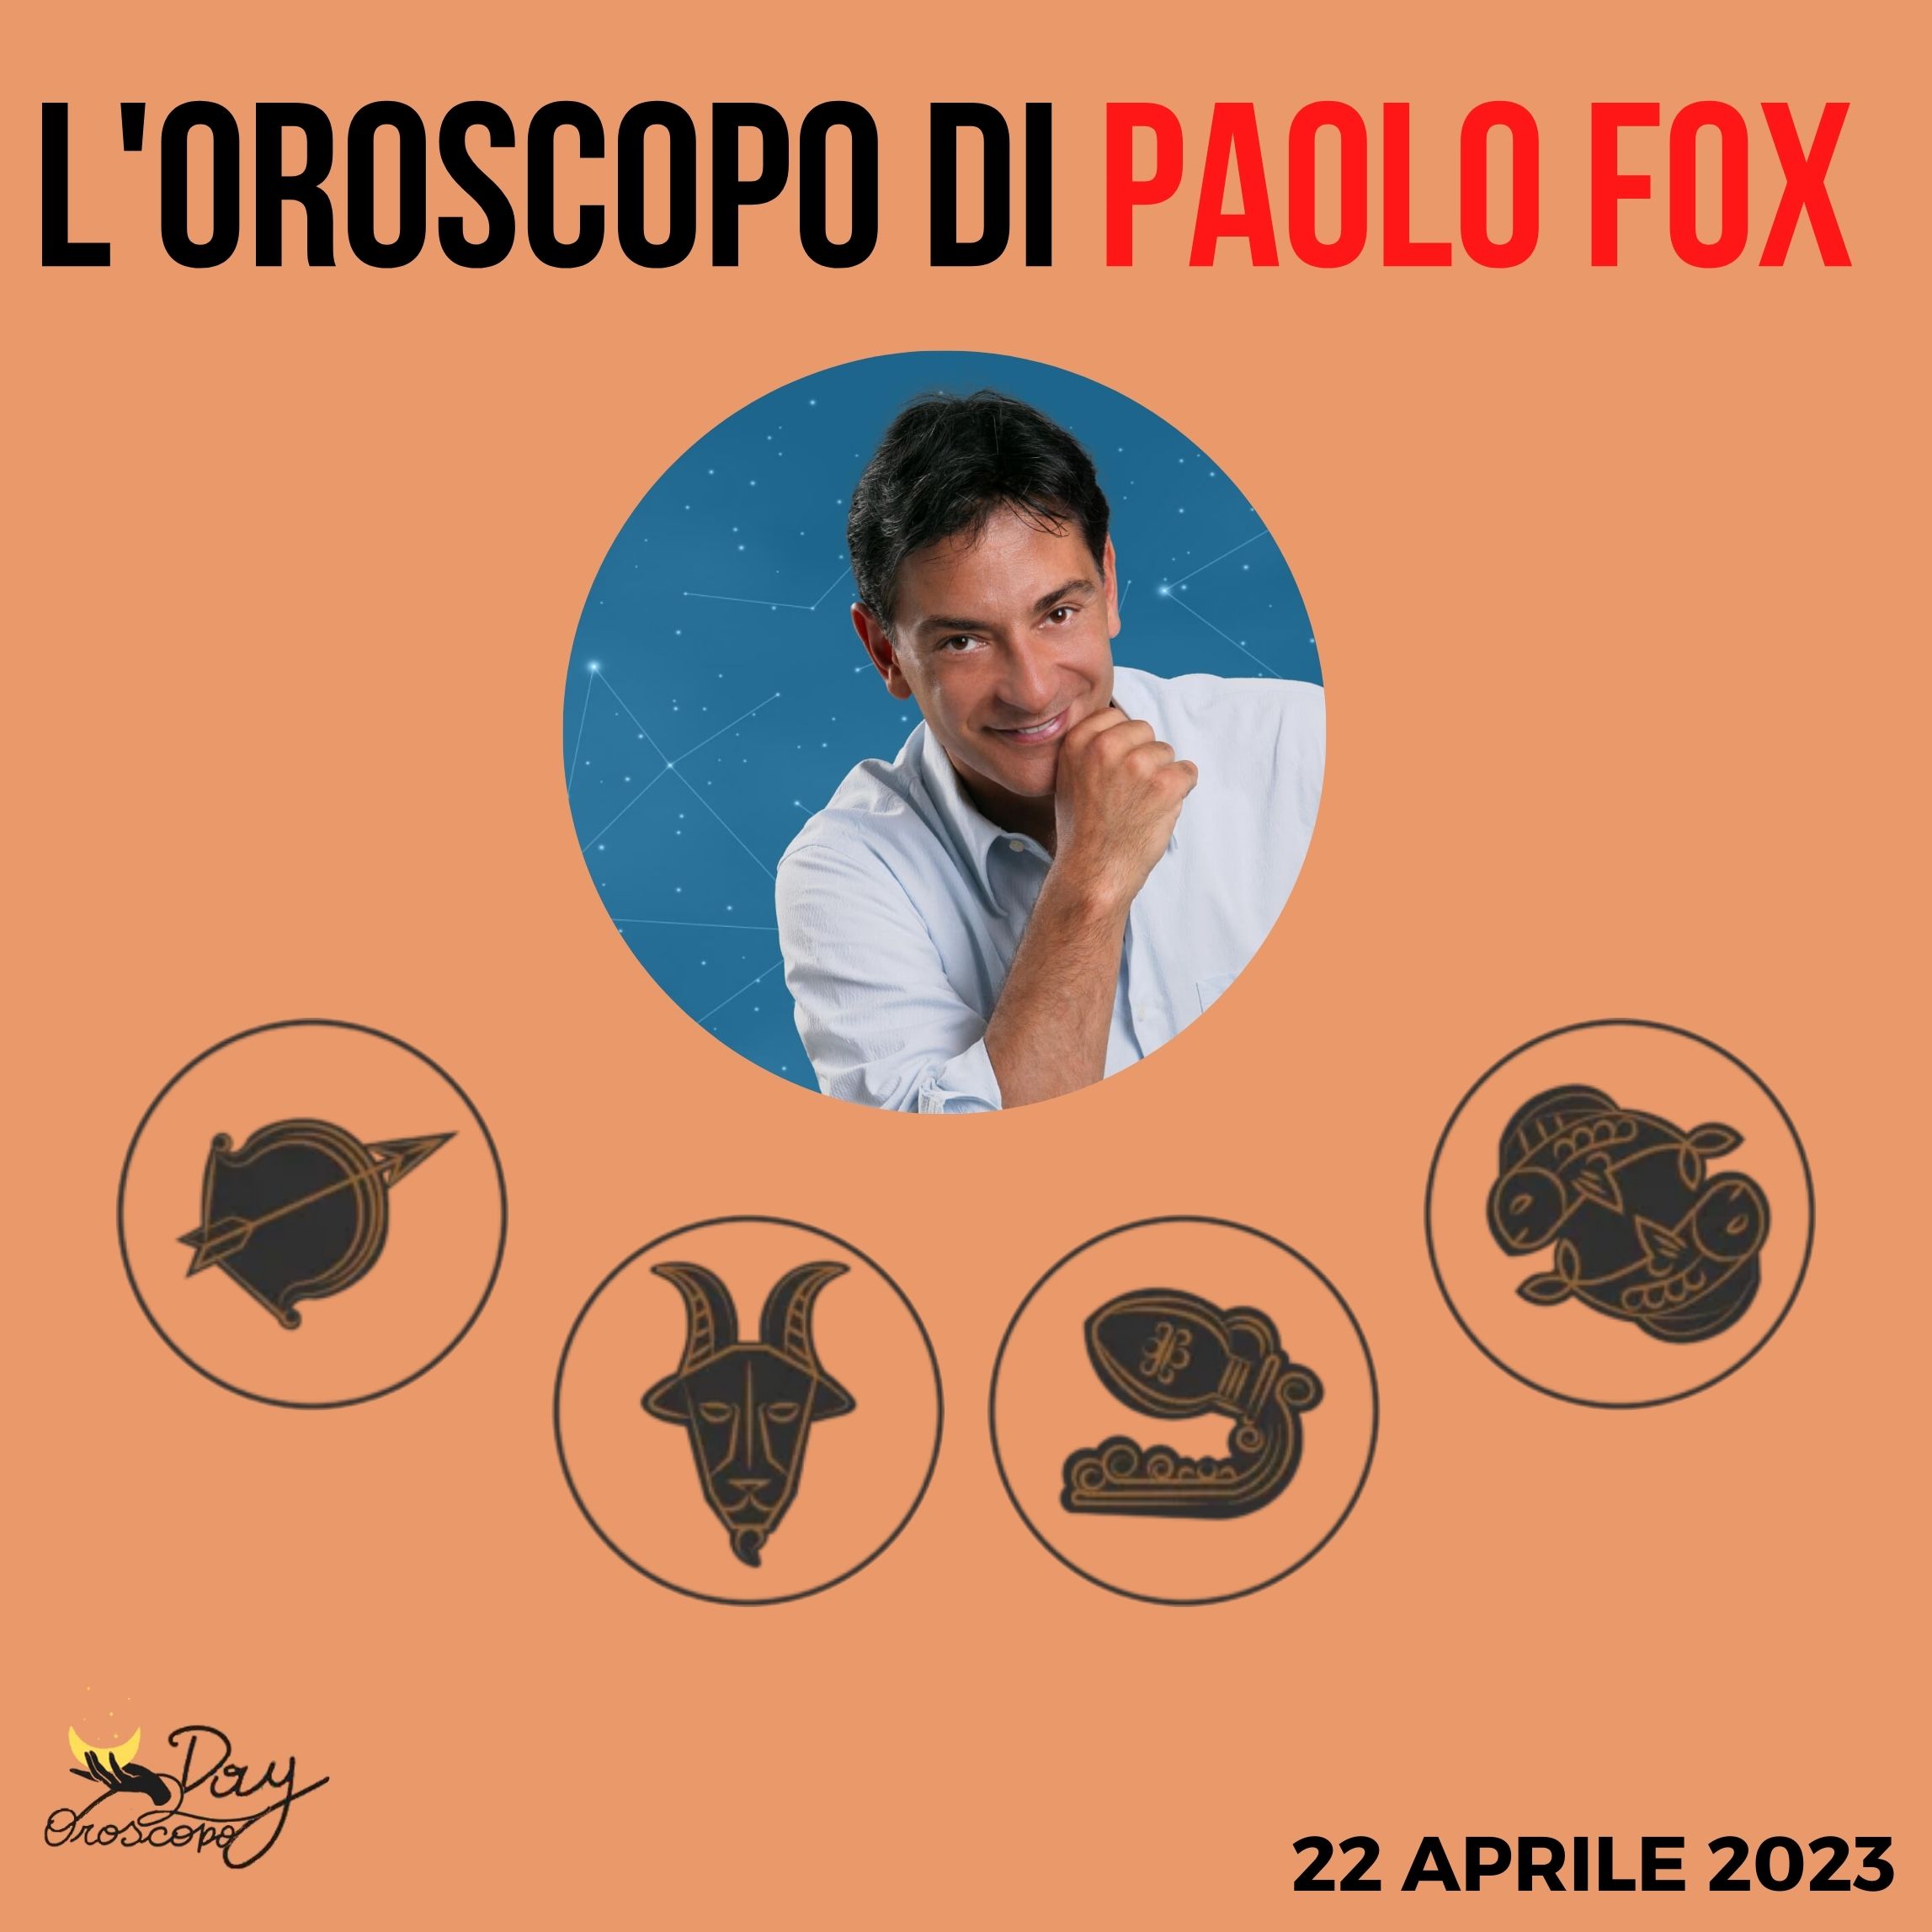 Oroscopo oggi domani Paolo Fox 22 aprile Sagittario Capricorno Acquario Pesci